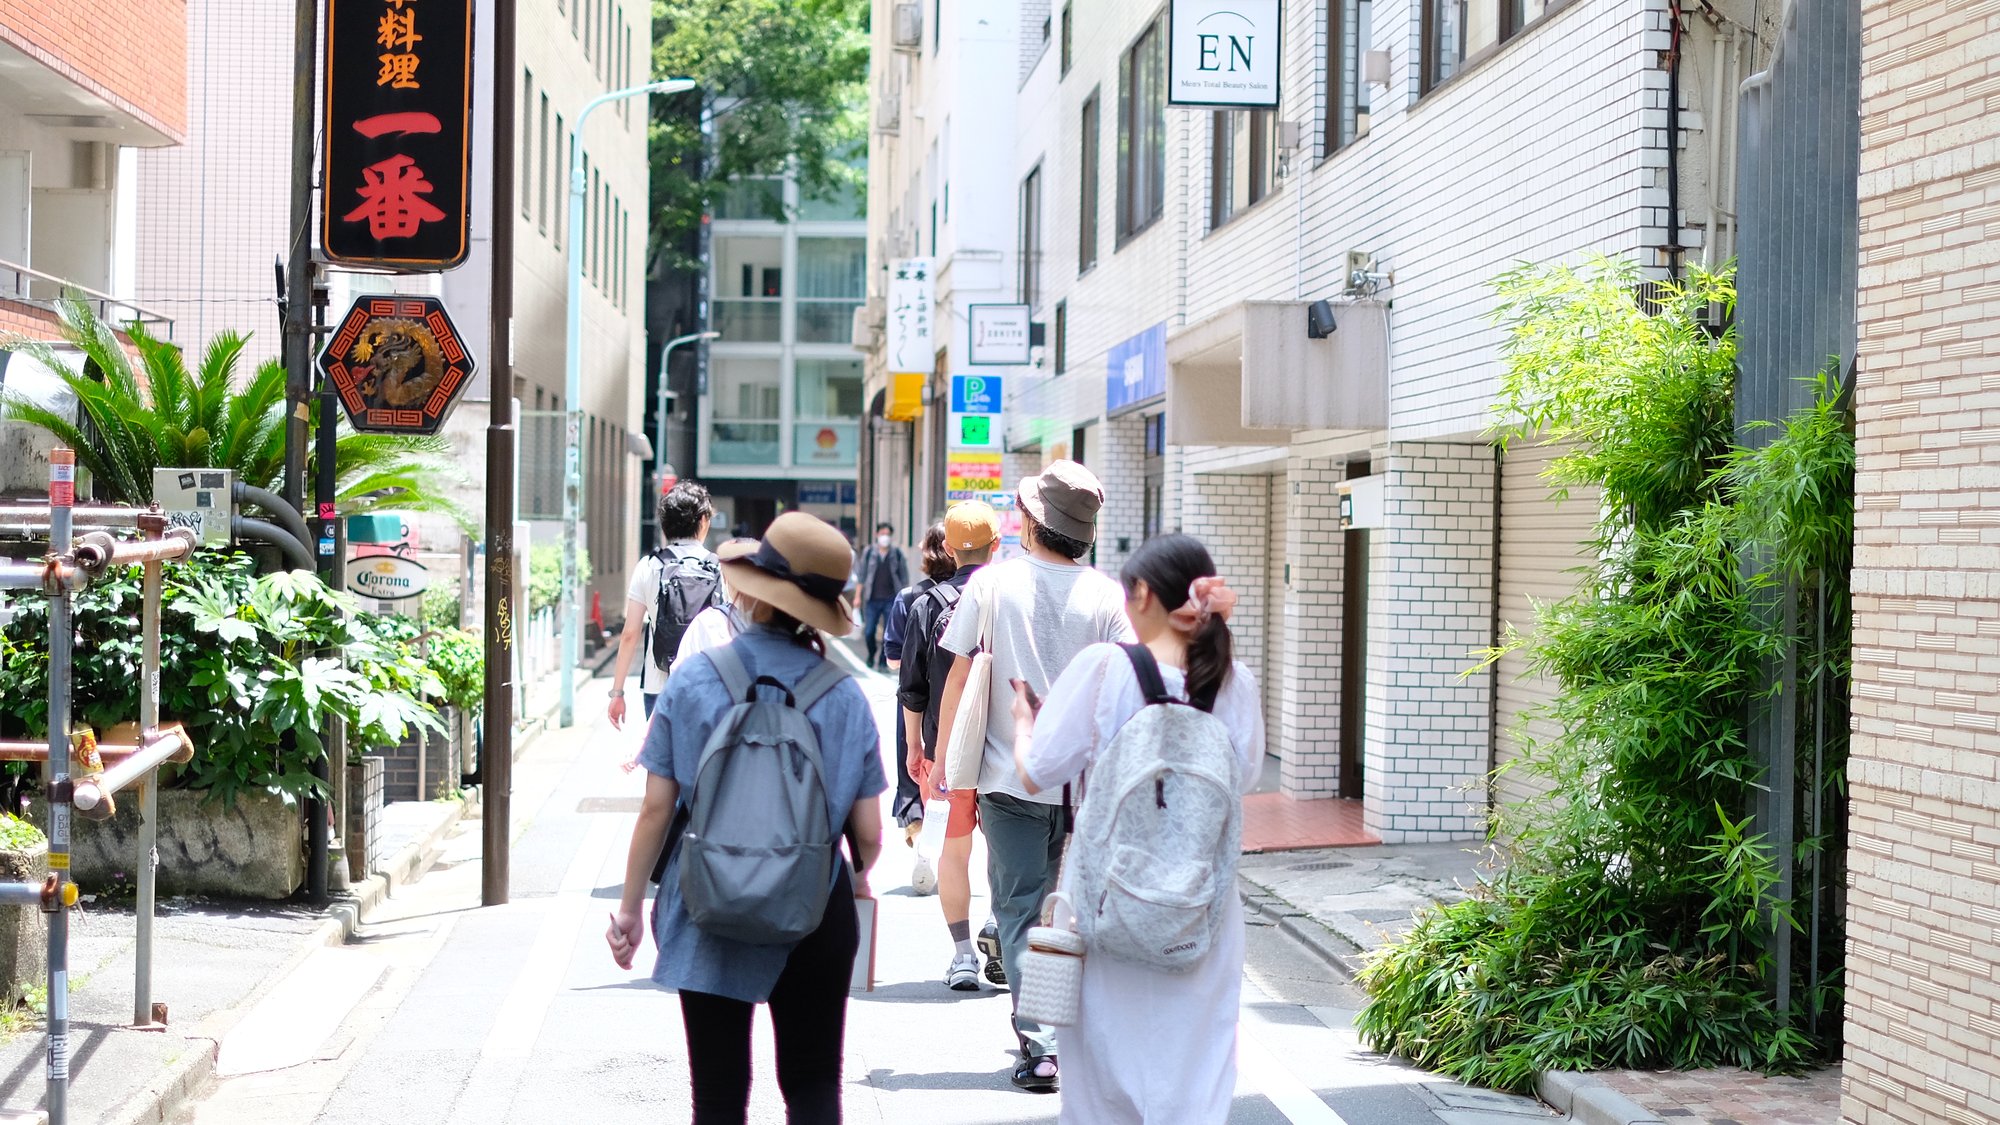 ワークショップ参加者が渋谷の道路を歩いている様子